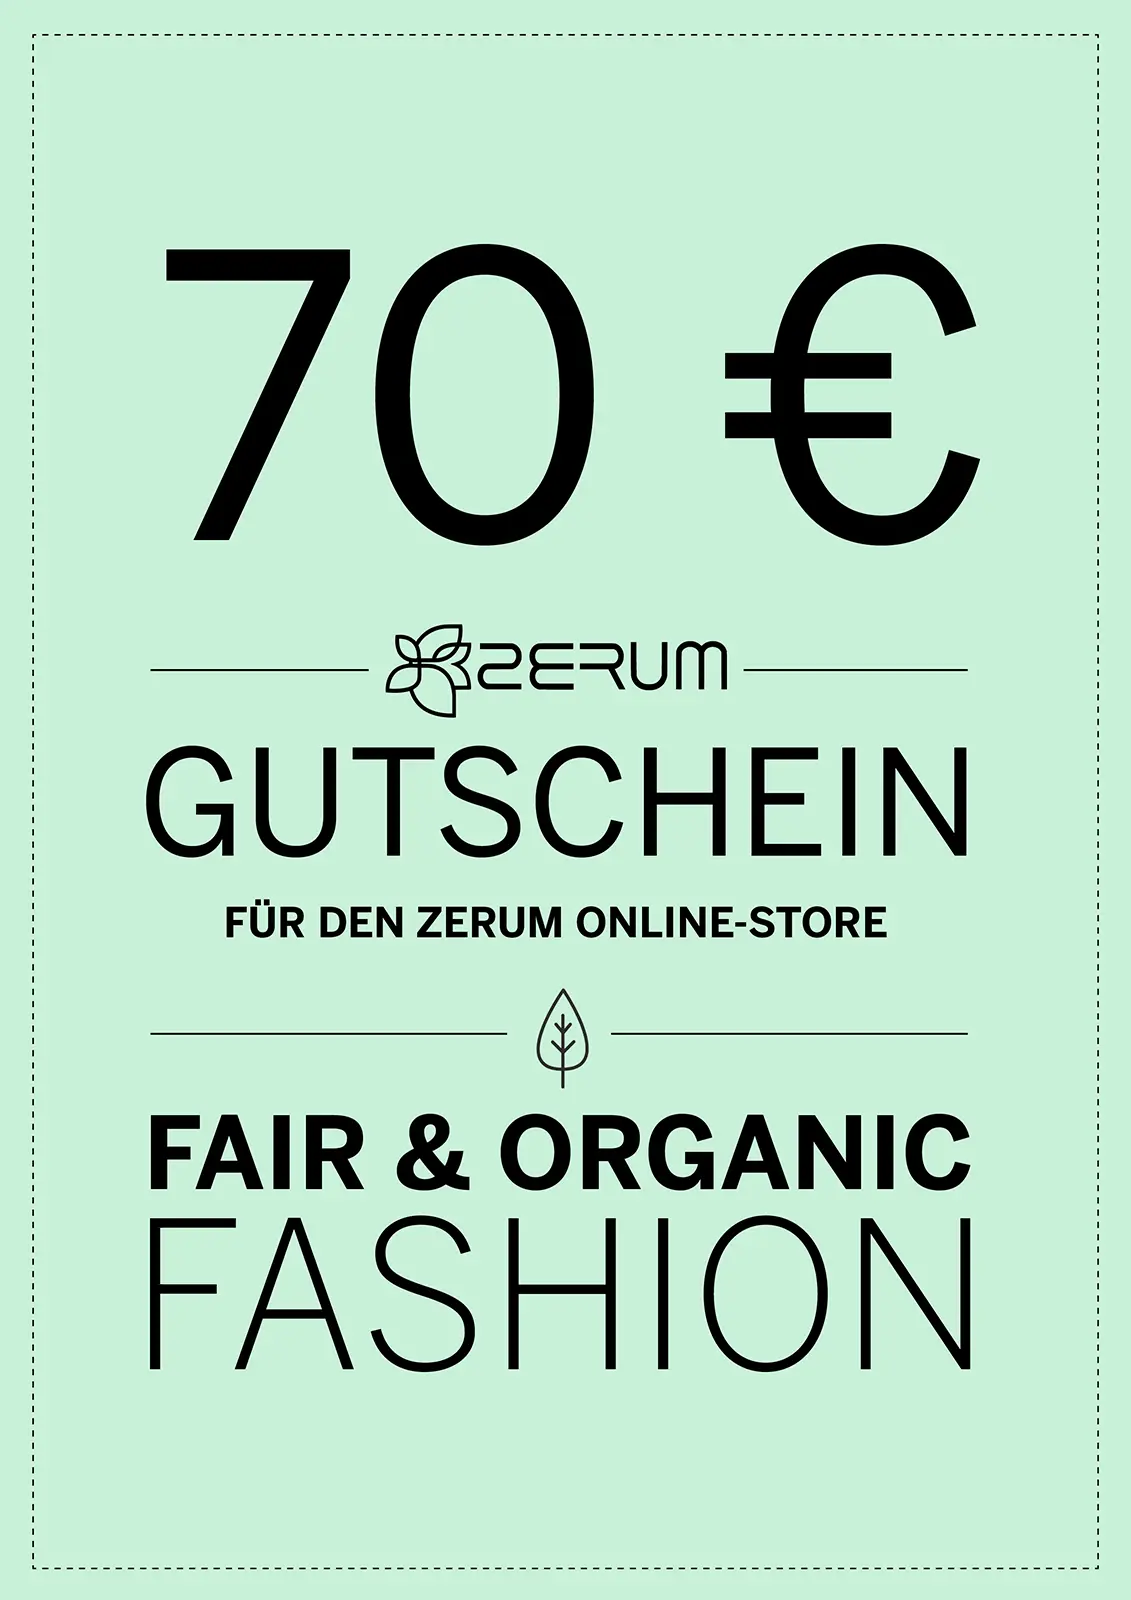 70€ Gutschein - Online